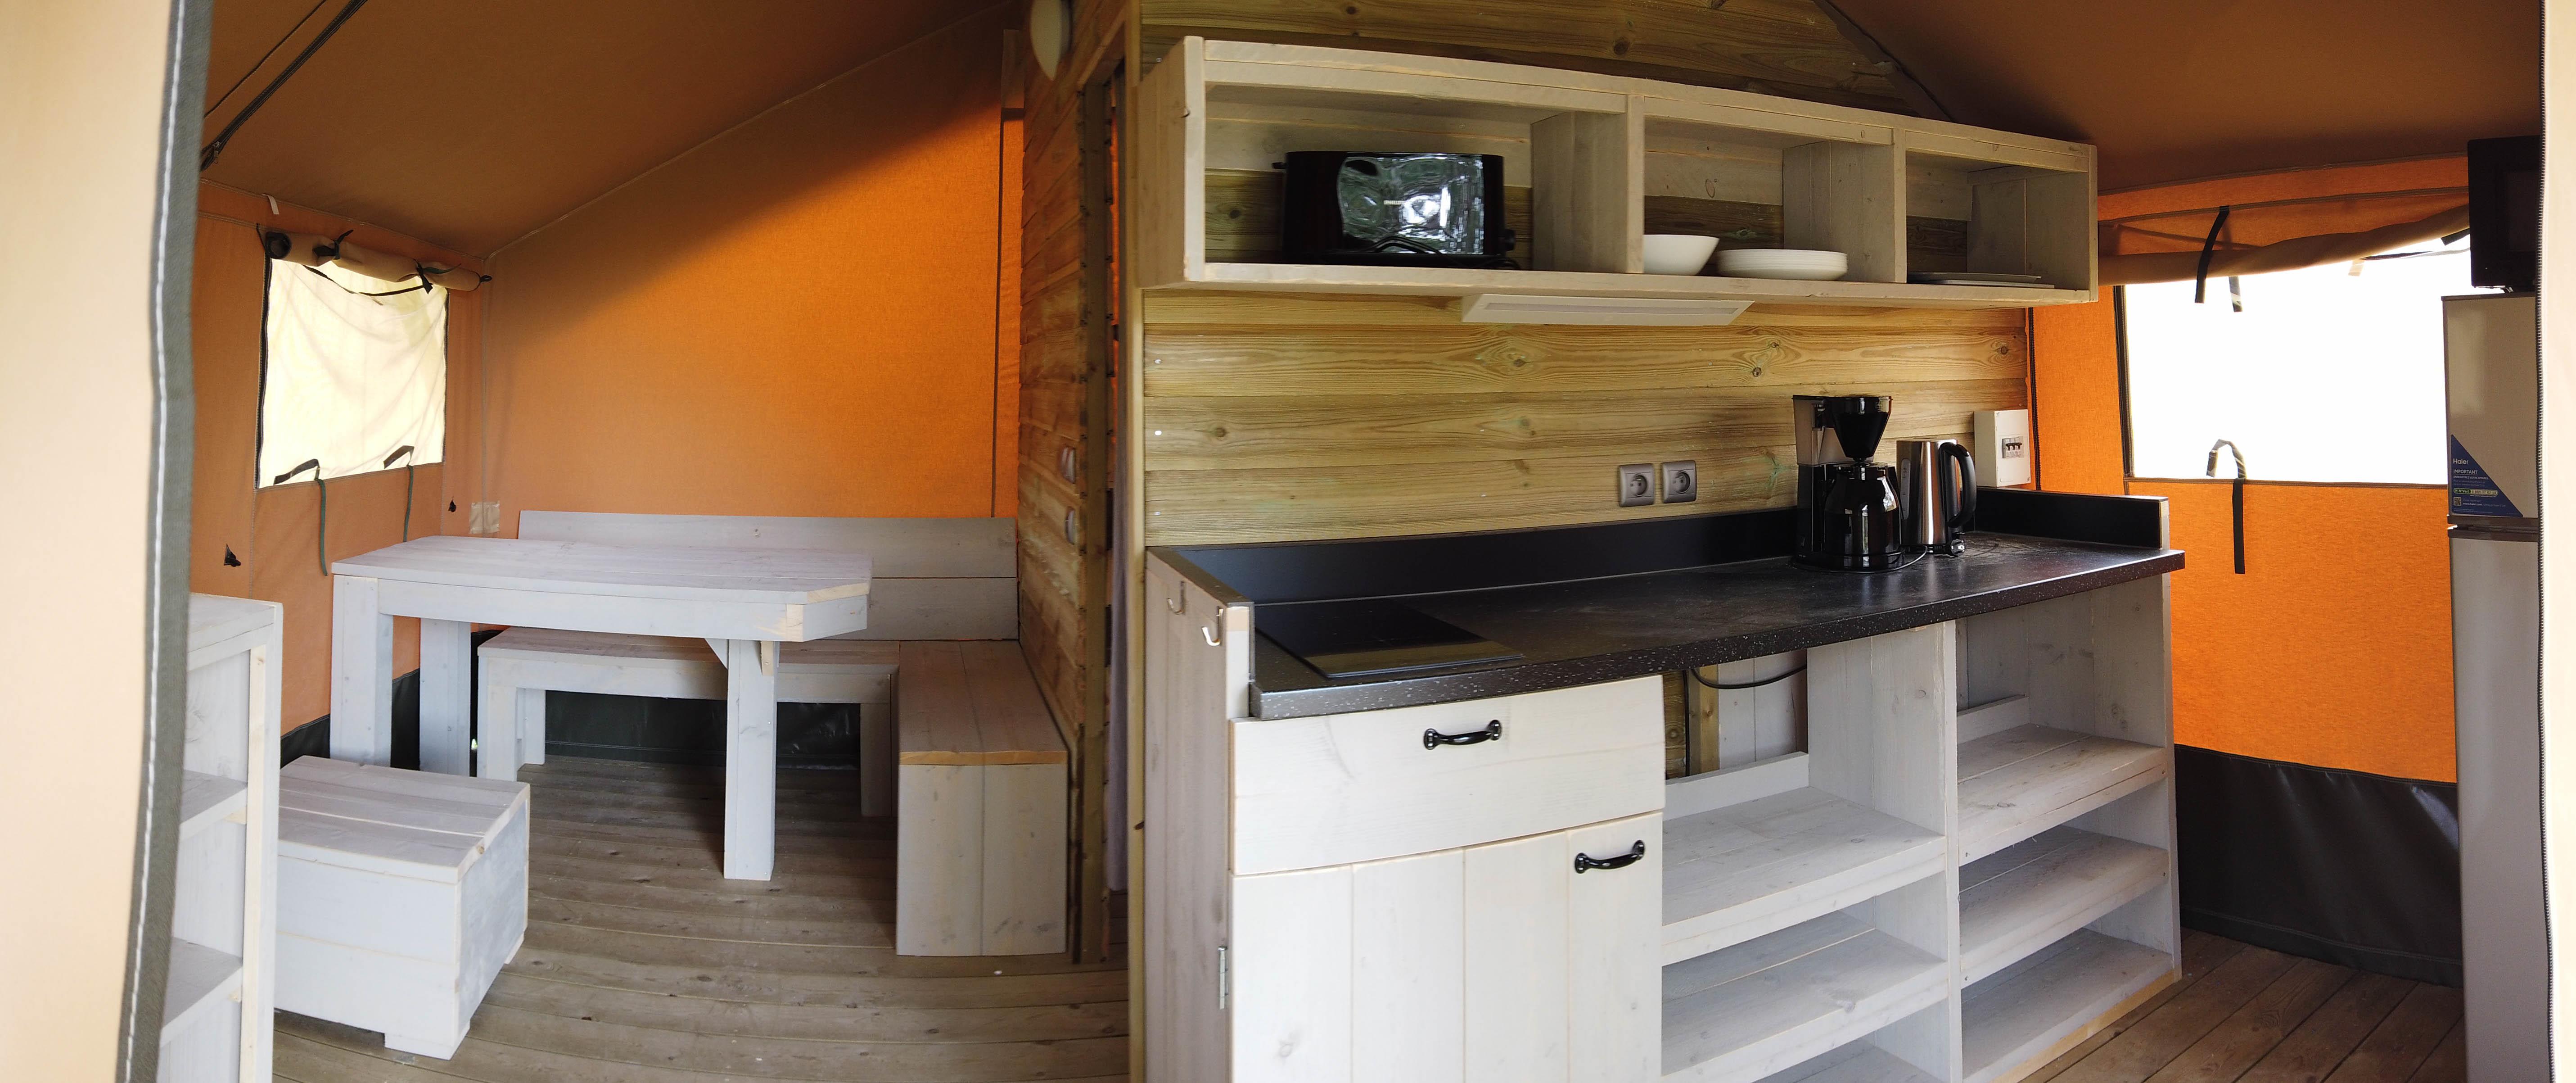 Bungalow Compacte + Duo : 2 chambres dans 2 bungalows séparés, cuisine, pas de sanitaire